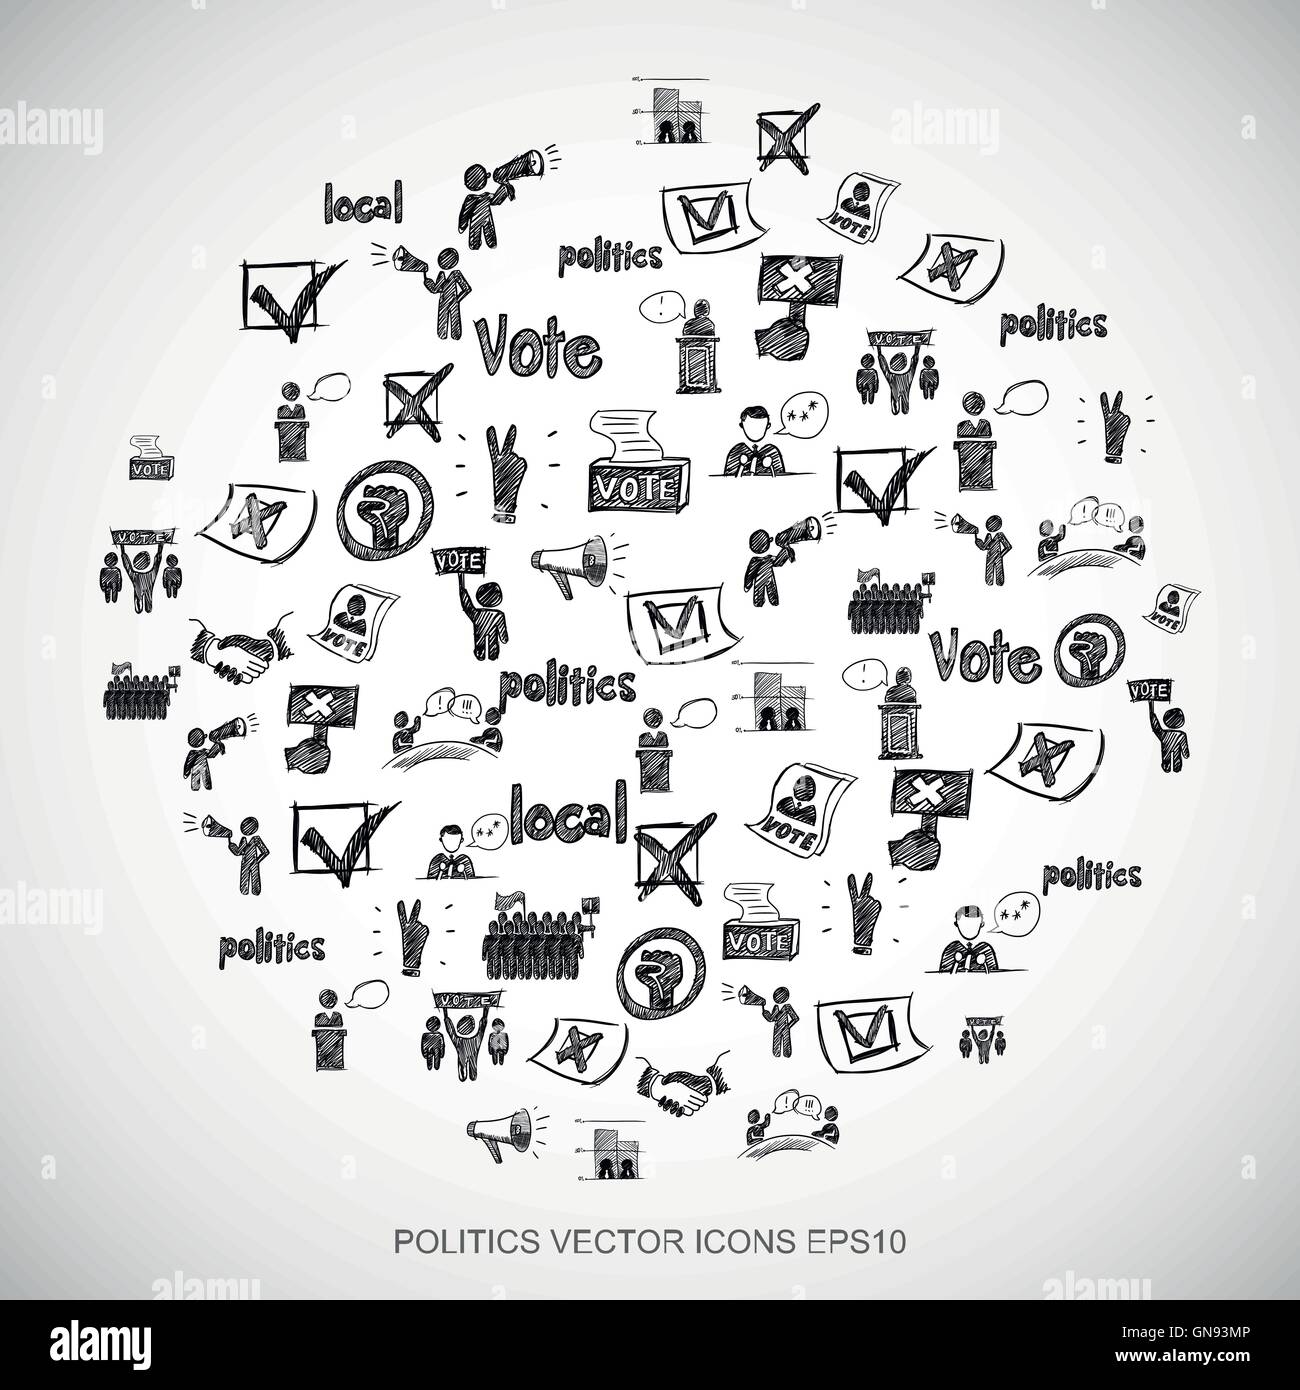 Gribouillages noir politique dessiné à la main Icons set sur blanc. EPS10 vector illustration. Illustration de Vecteur